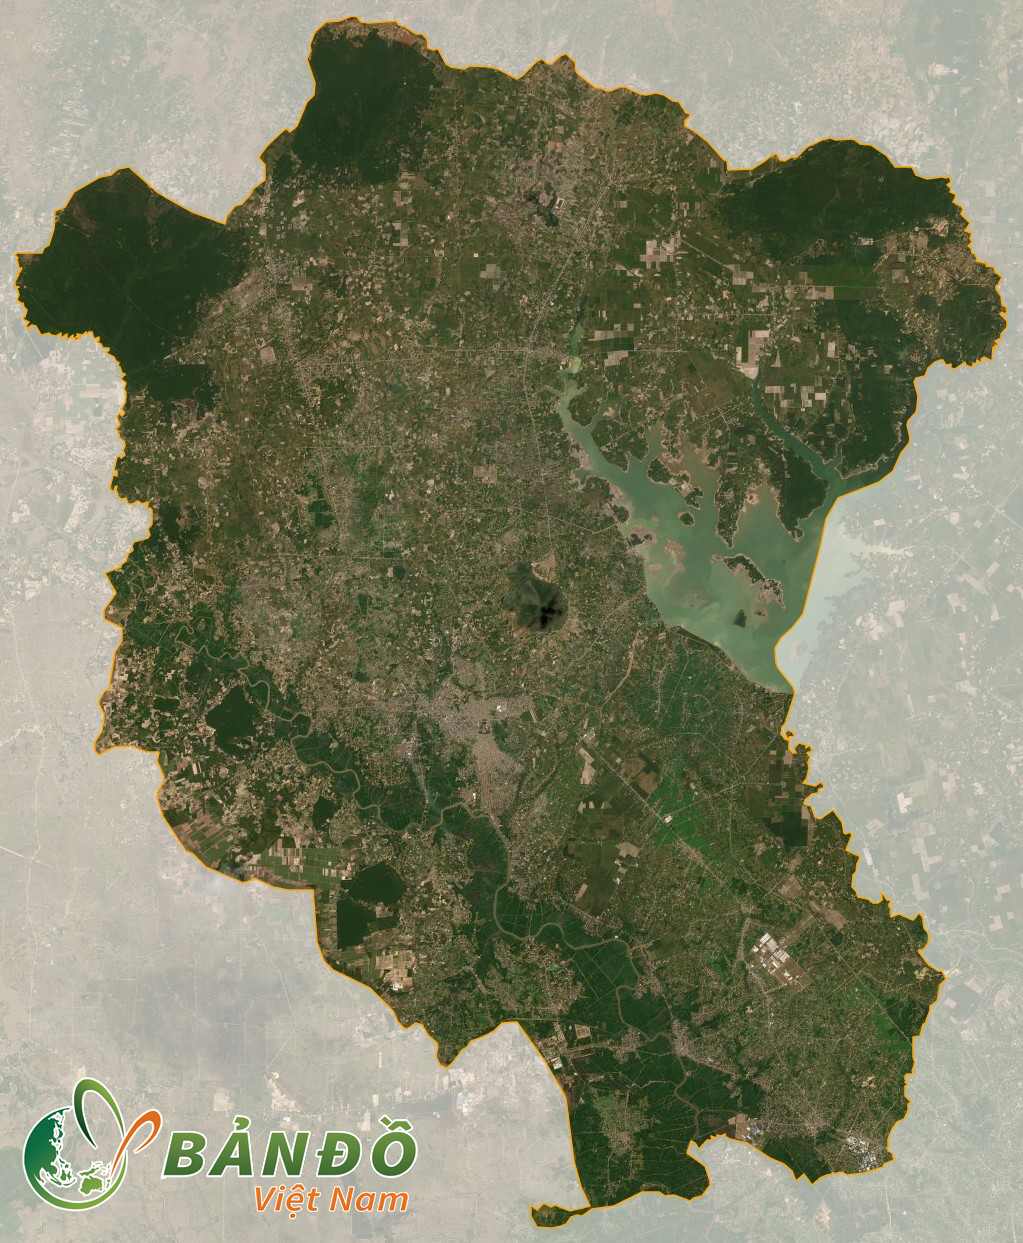 Bản dồ tỉnh Tây Ninh trên vệ tinh